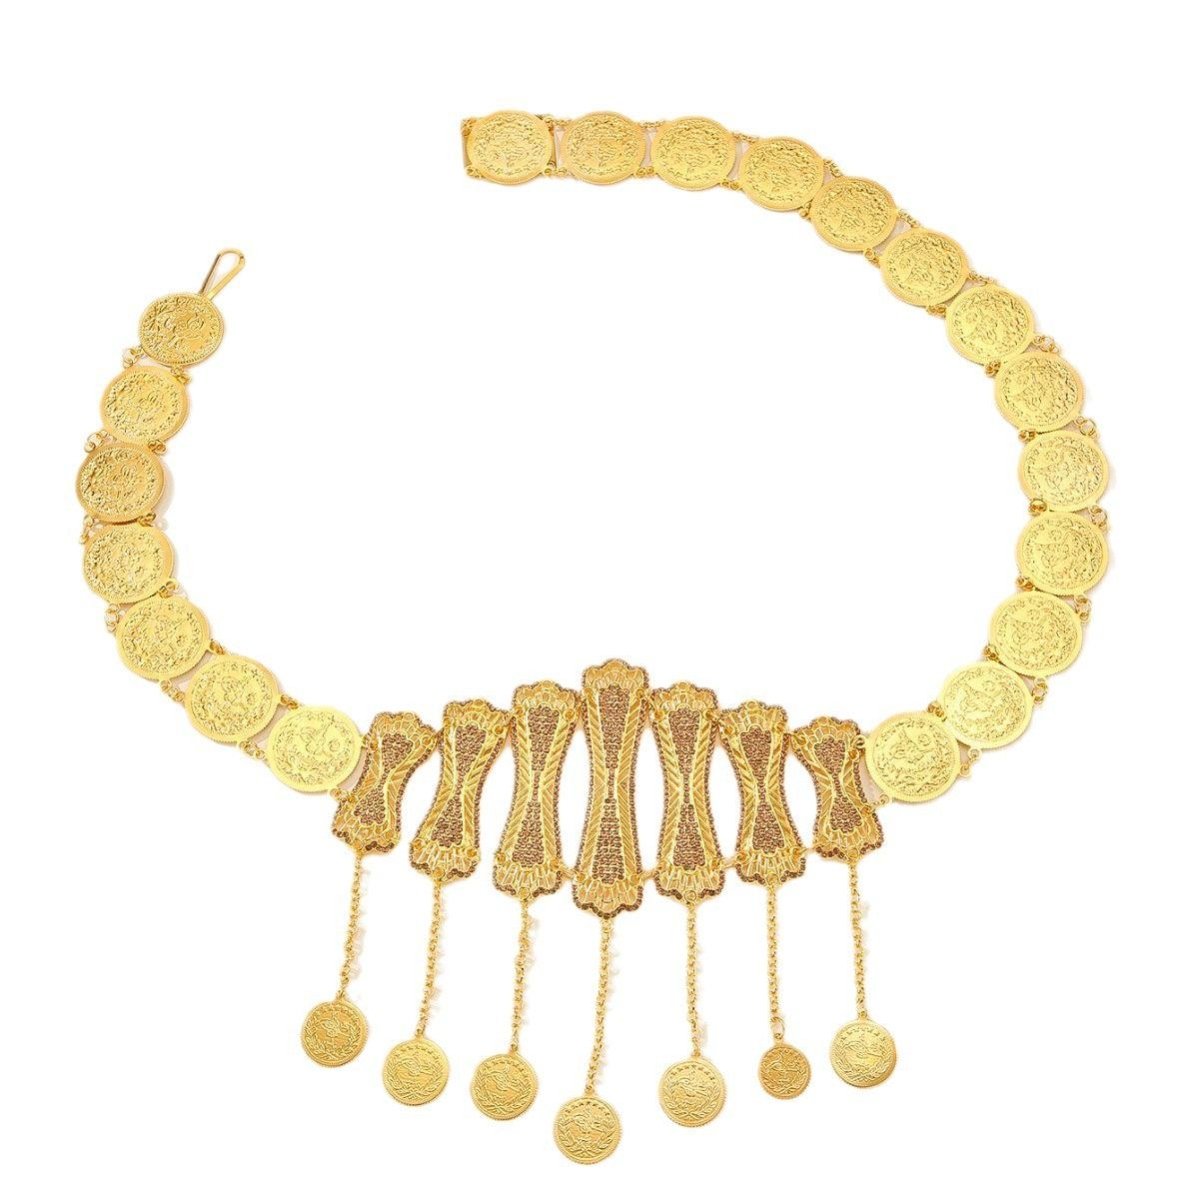 Ceinture marocaine dorée avec pendentifs et médaillons originaux, modèle Zrika - La Boutique de la Ceinture